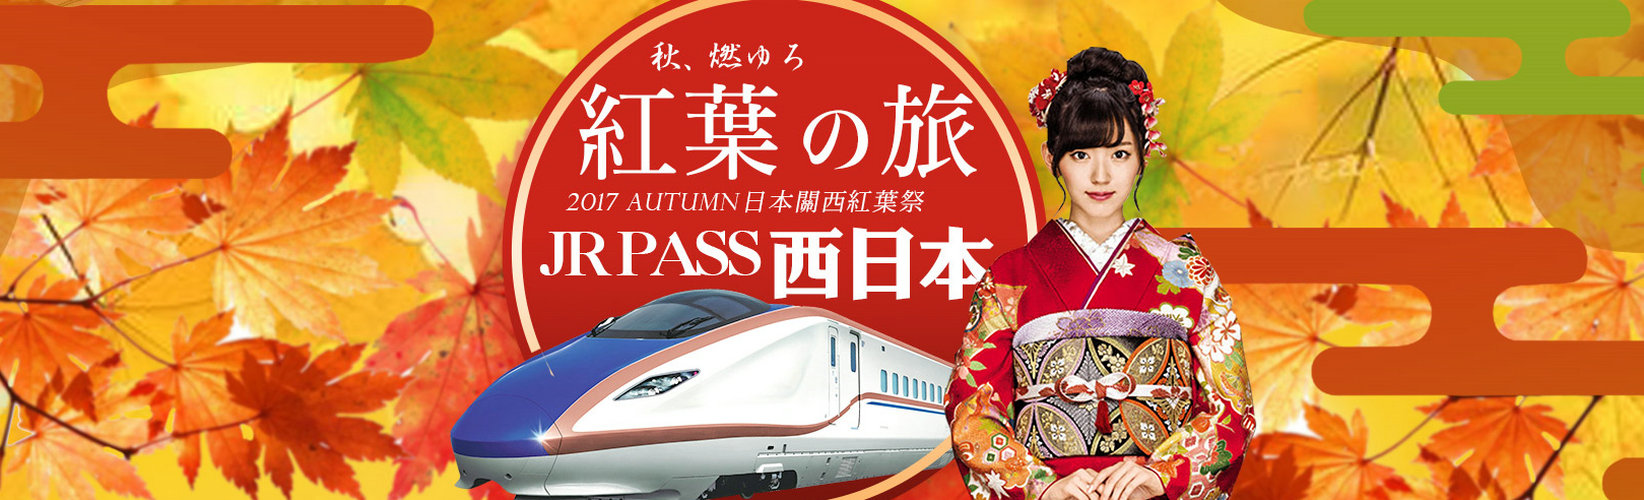 日本旅游签证